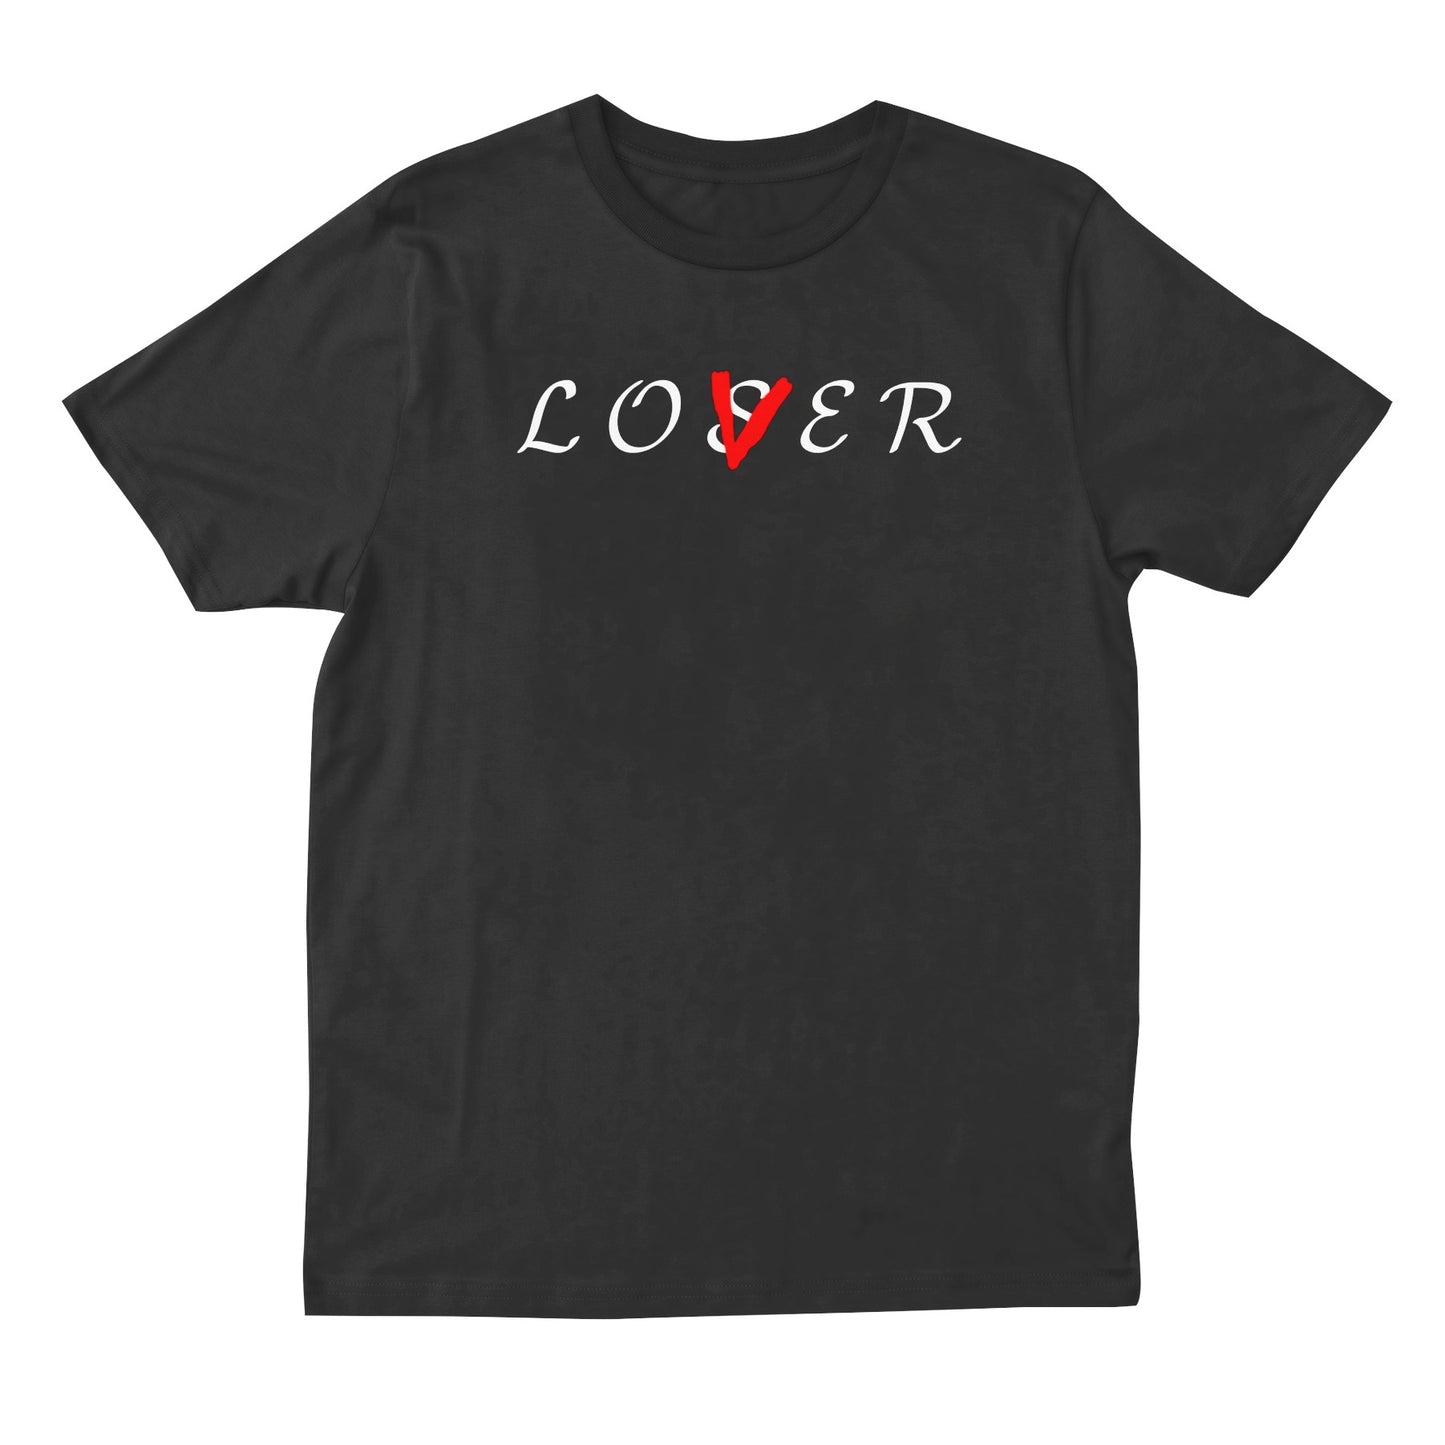 Lo S/V er T-shirt